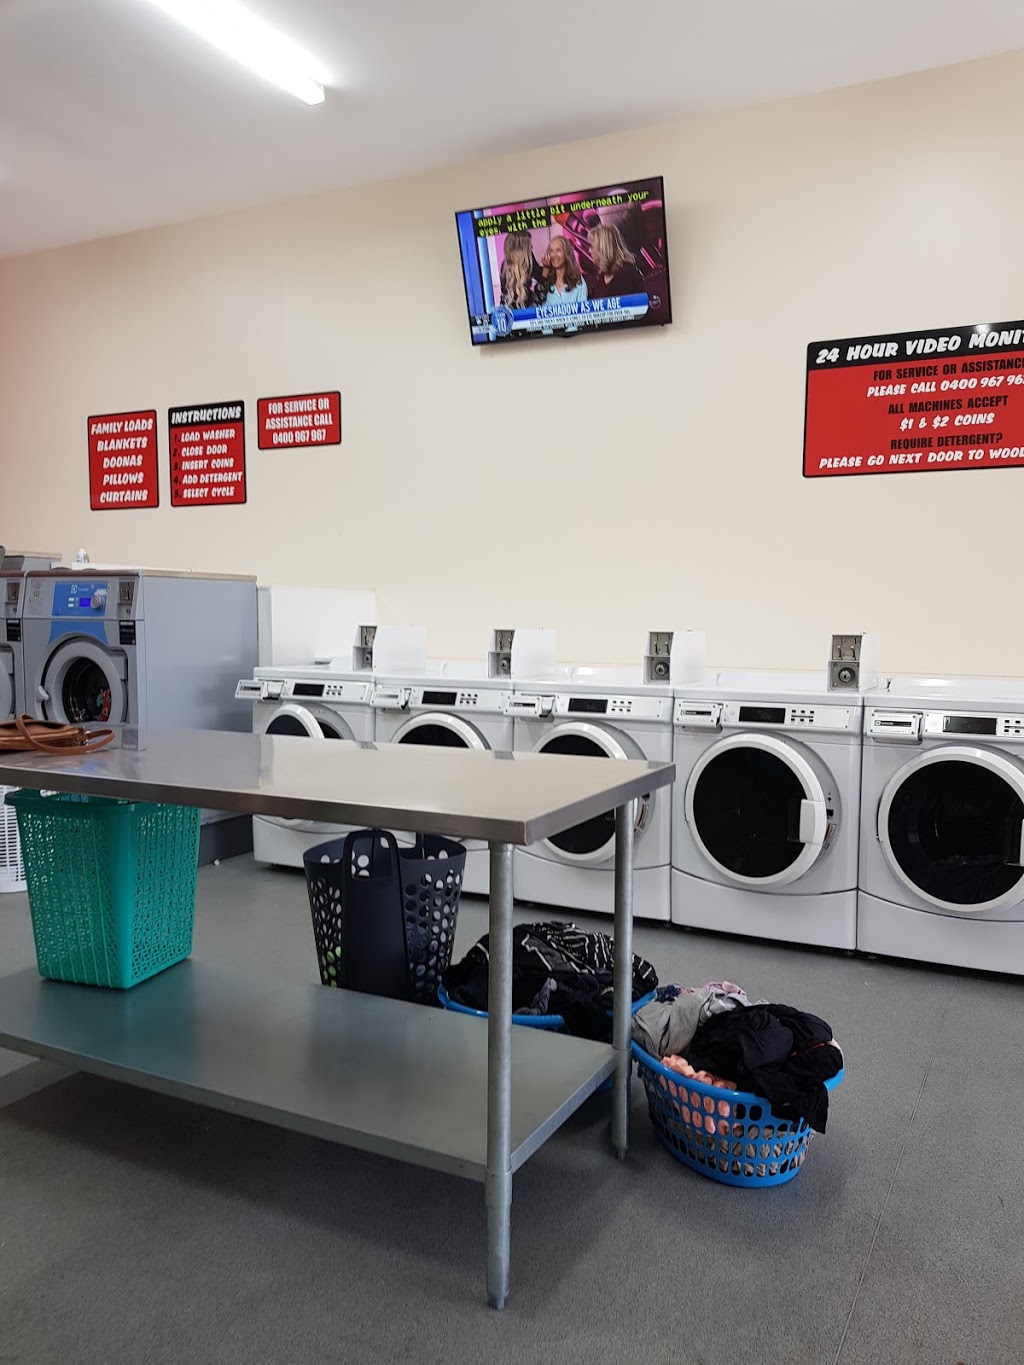 Collingwood Park Laundromat | laundry | shop 3/157 Collingwood Dr, Collingwood Park QLD 4301, Australia | 0400967967 OR +61 400 967 967